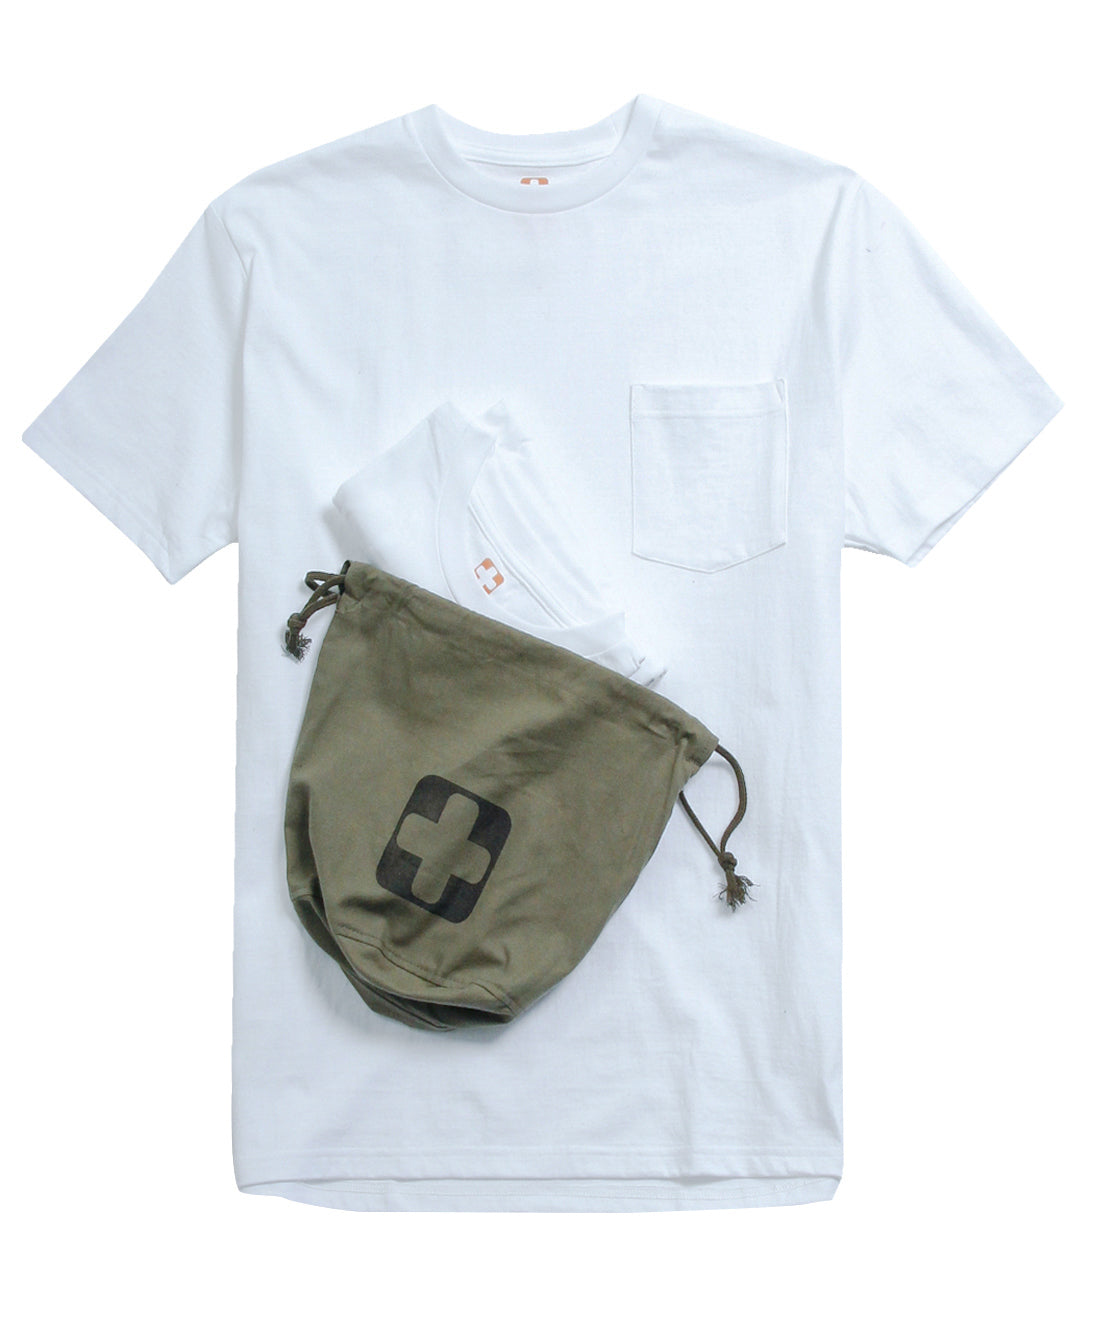 2 Pack Pocket T Shirt - White